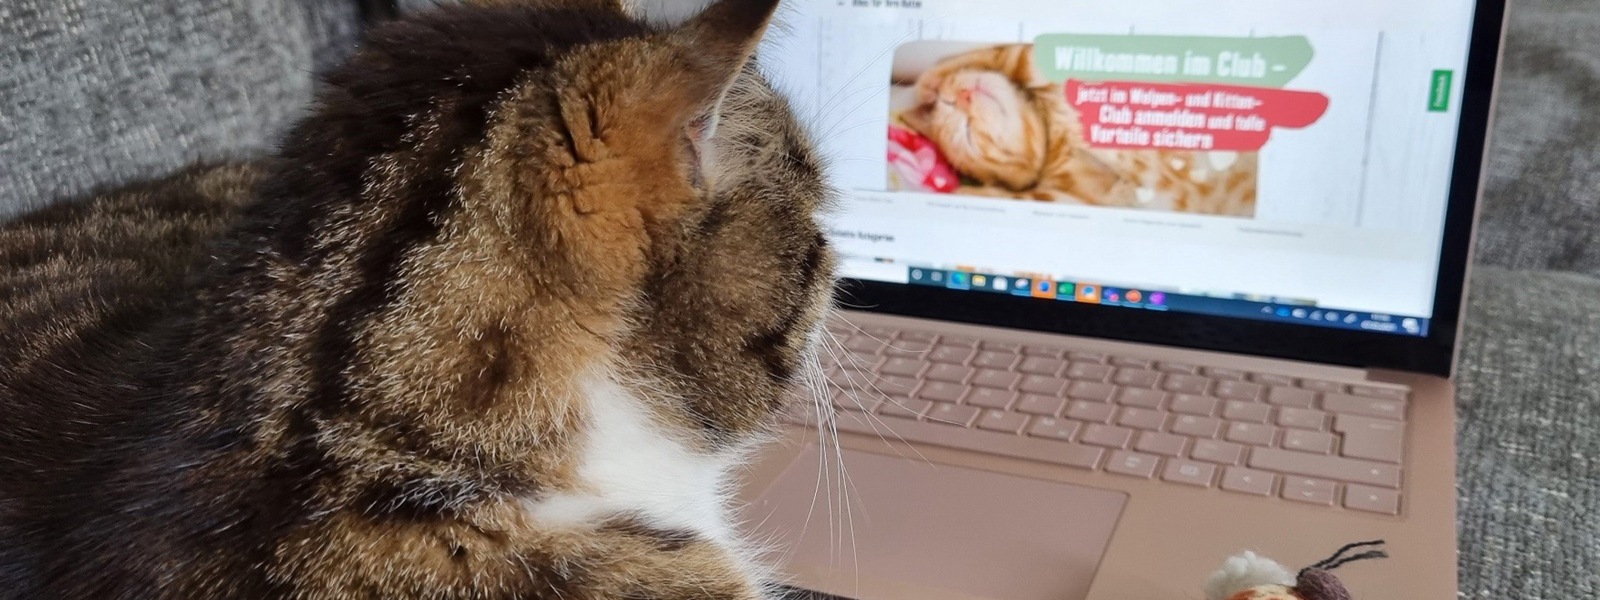 Das Bild zeigt eine Katze, die vor einem Laptop sitzt und die Homepage von Fressnapf zeigt.